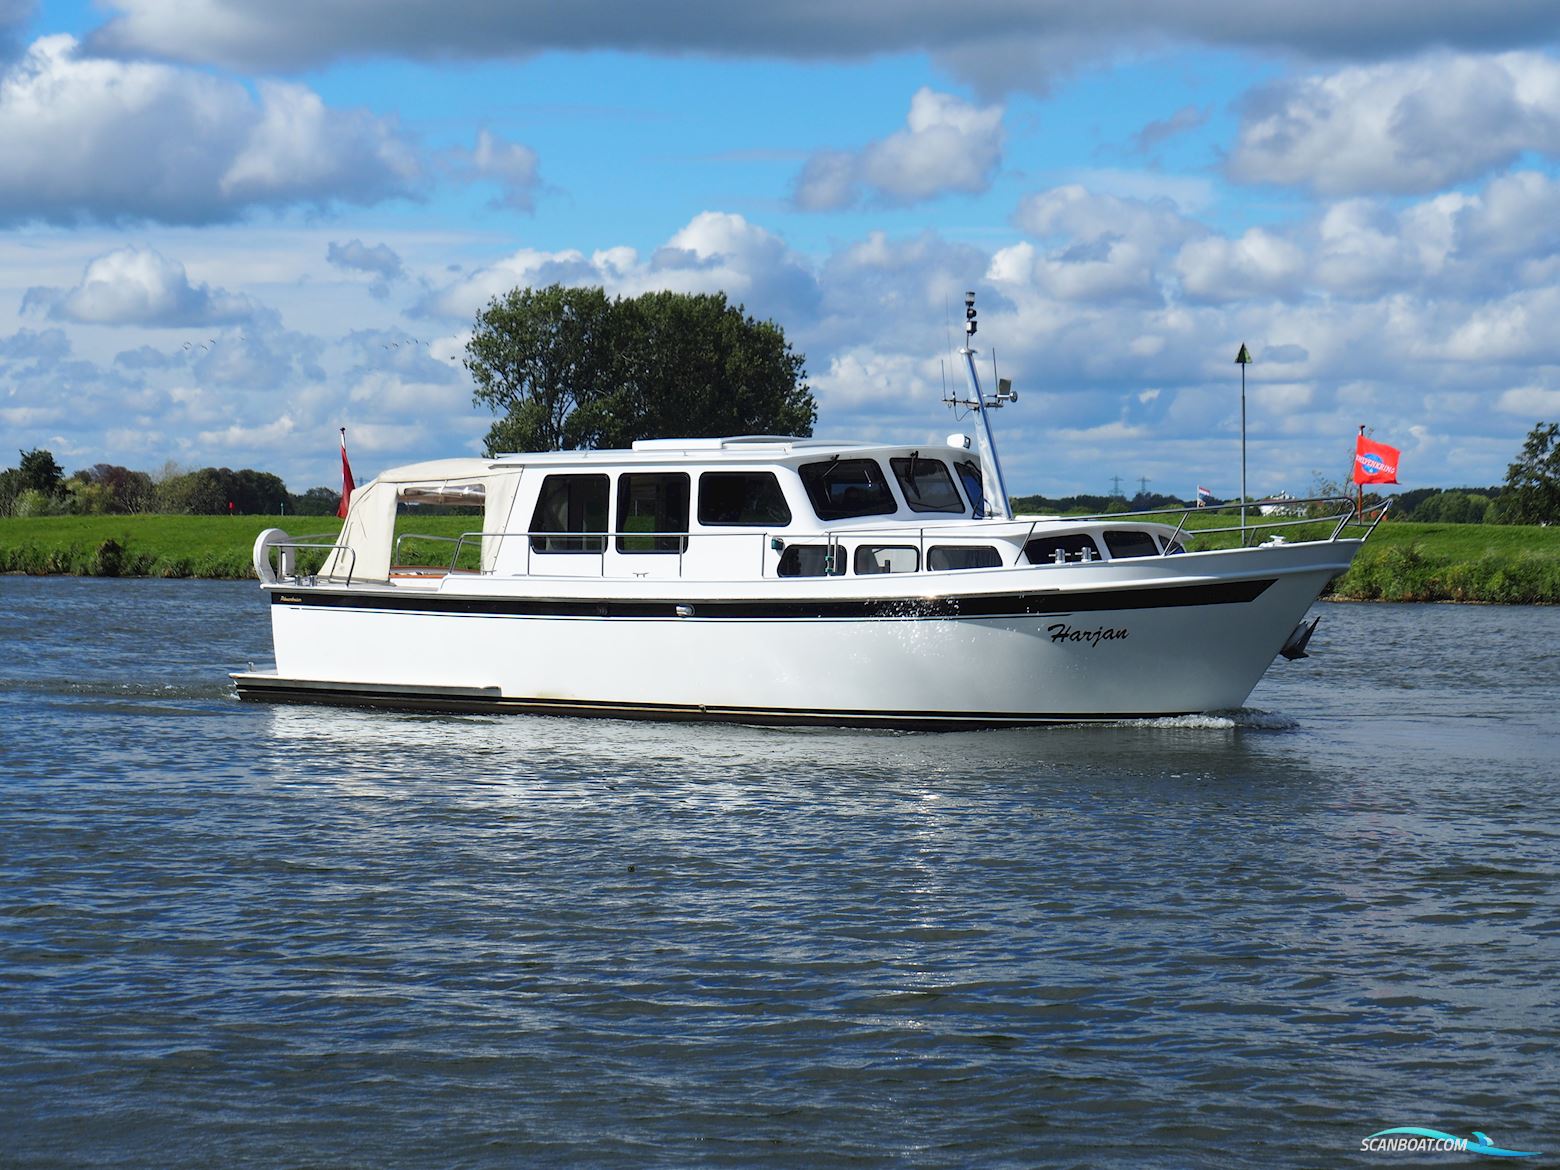 Pikmeerkruiser 1235 OK Motorboot 1991, mit Volvo Penta motor, Niederlande